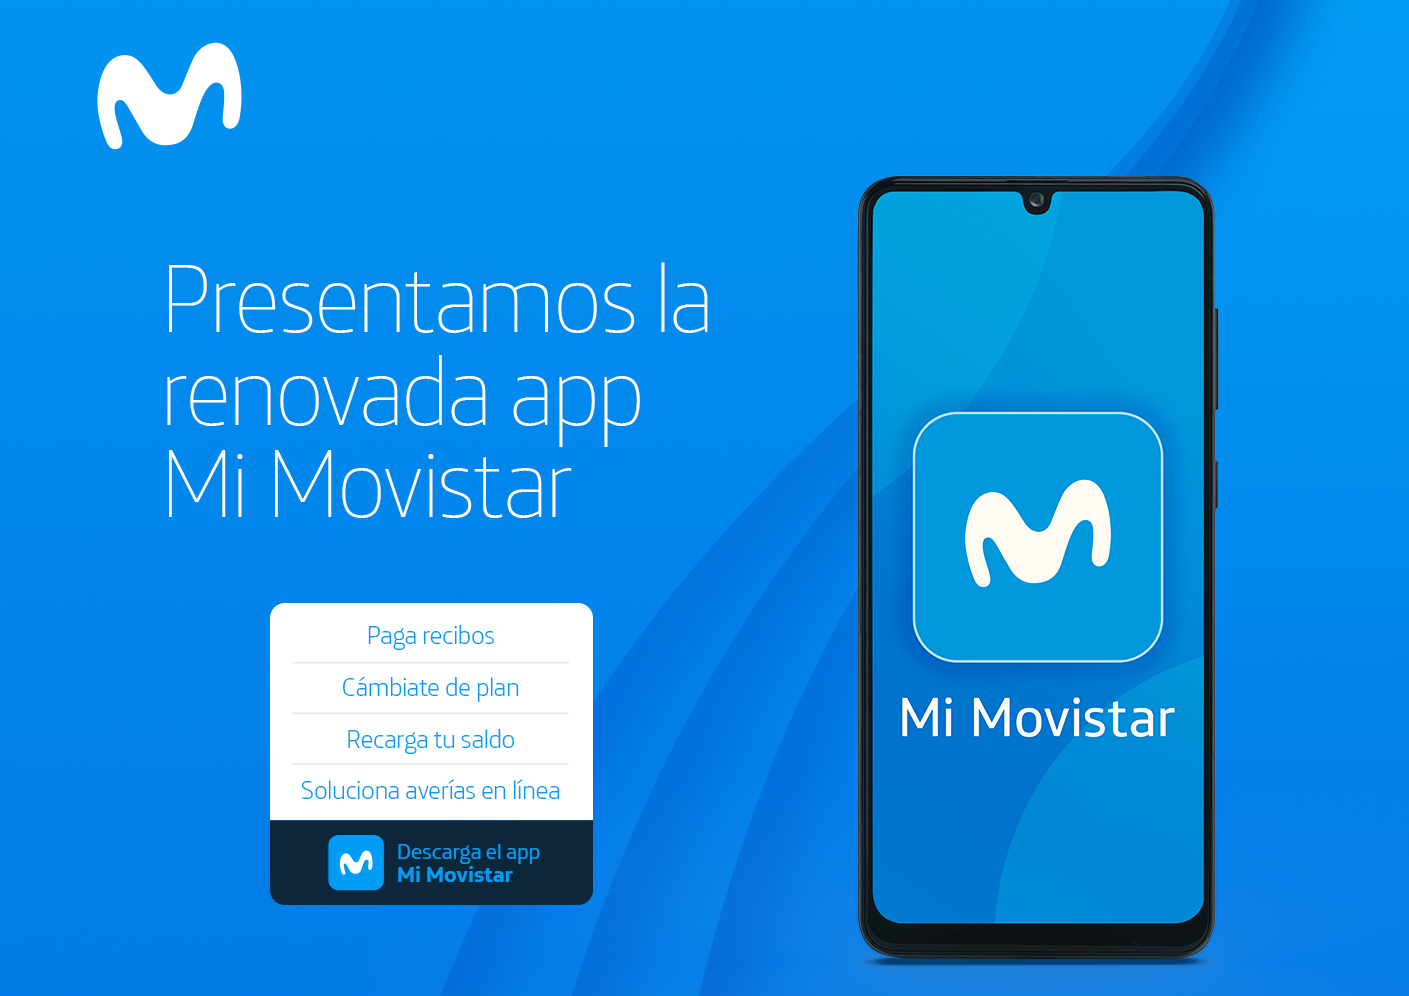 Movistar simplifica la atención de sus clientes a través de renovada app ‘Mi Movistar’